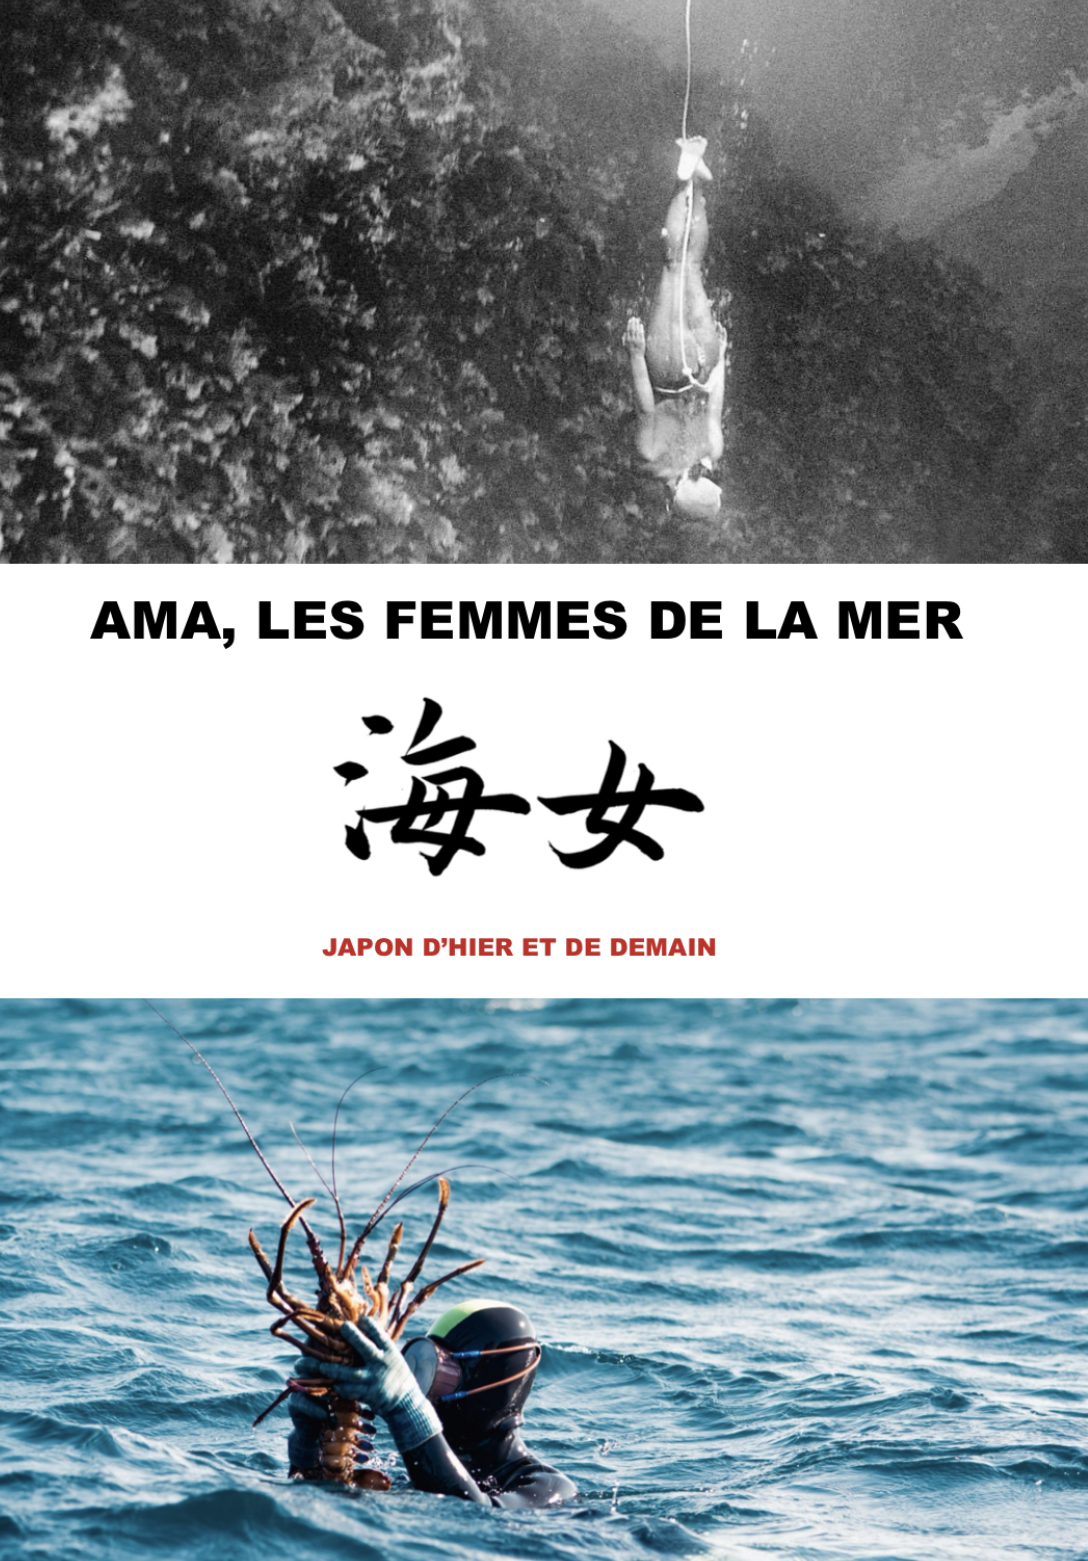 AMA DU JAPON, les femmes de la mer